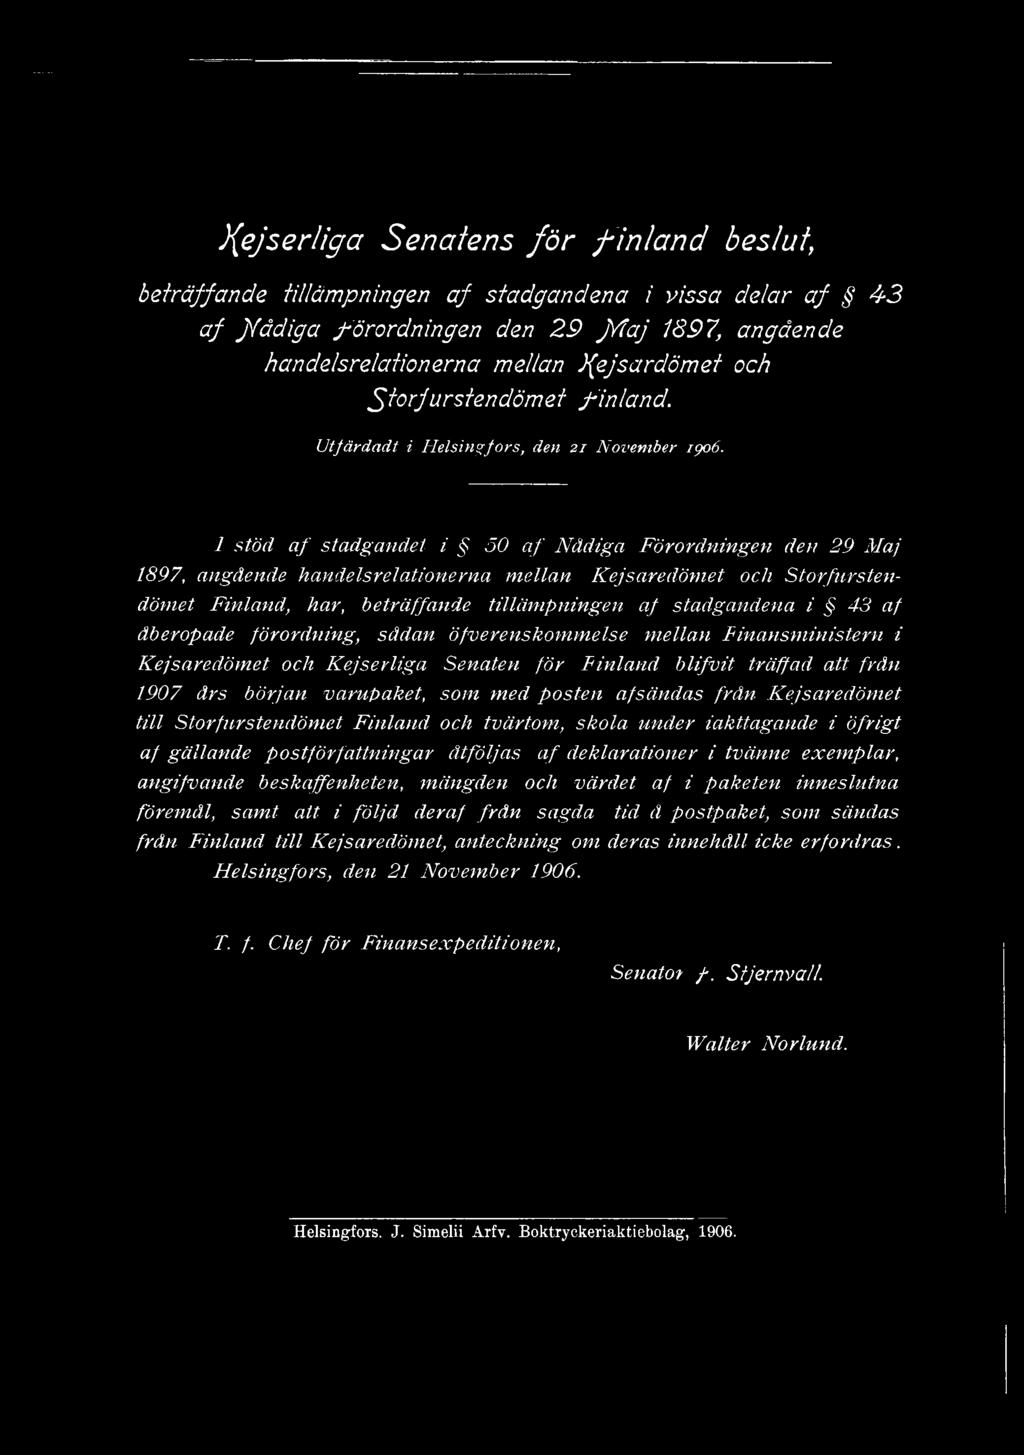 1 stöd a f stadgandet i 50 a f Nådiga Förordningen den 29 Maj 1897, angående handelsrelationerna mellan Kejsaredömet och Storfurstendömet Finland, har, beträffande tillämpningen af stadgandena i 43